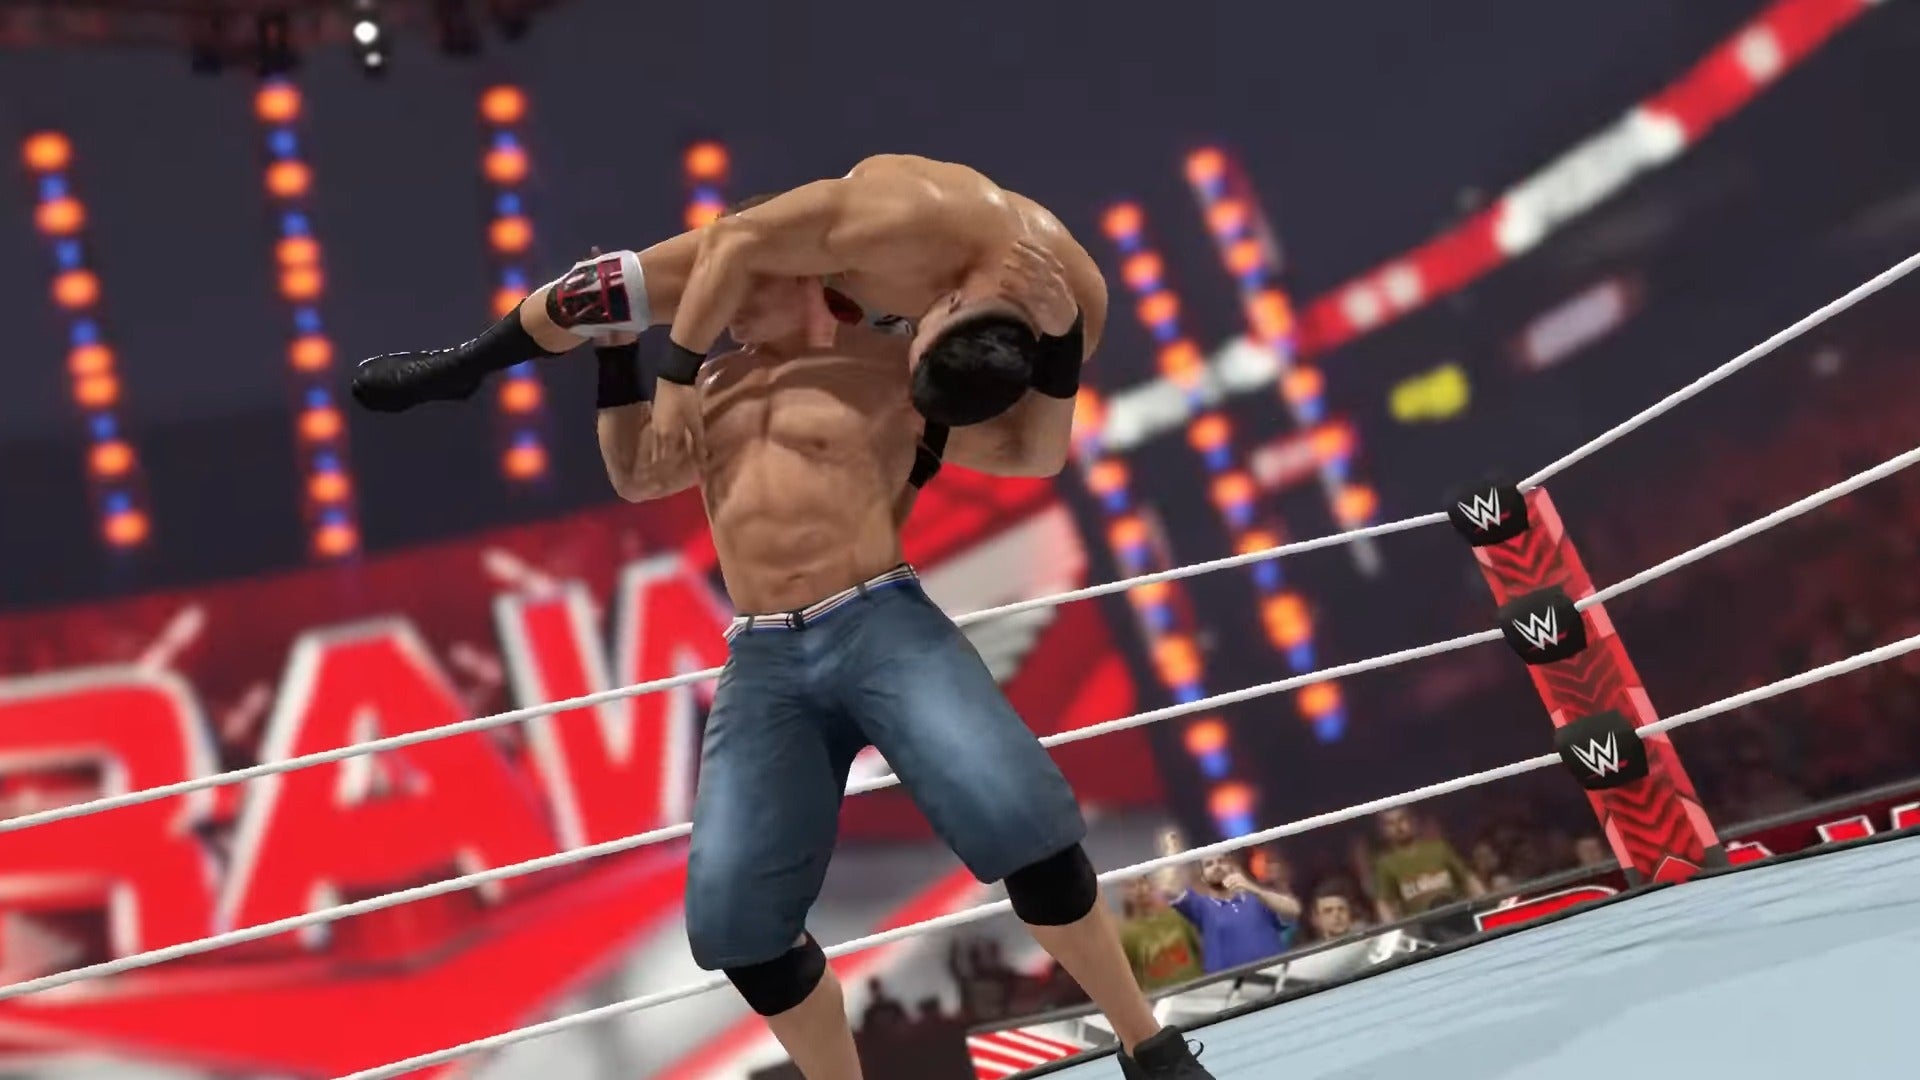 Bilder zu WWE 2K23 kommt mit Cover-Star John Cena im März auf den Markt